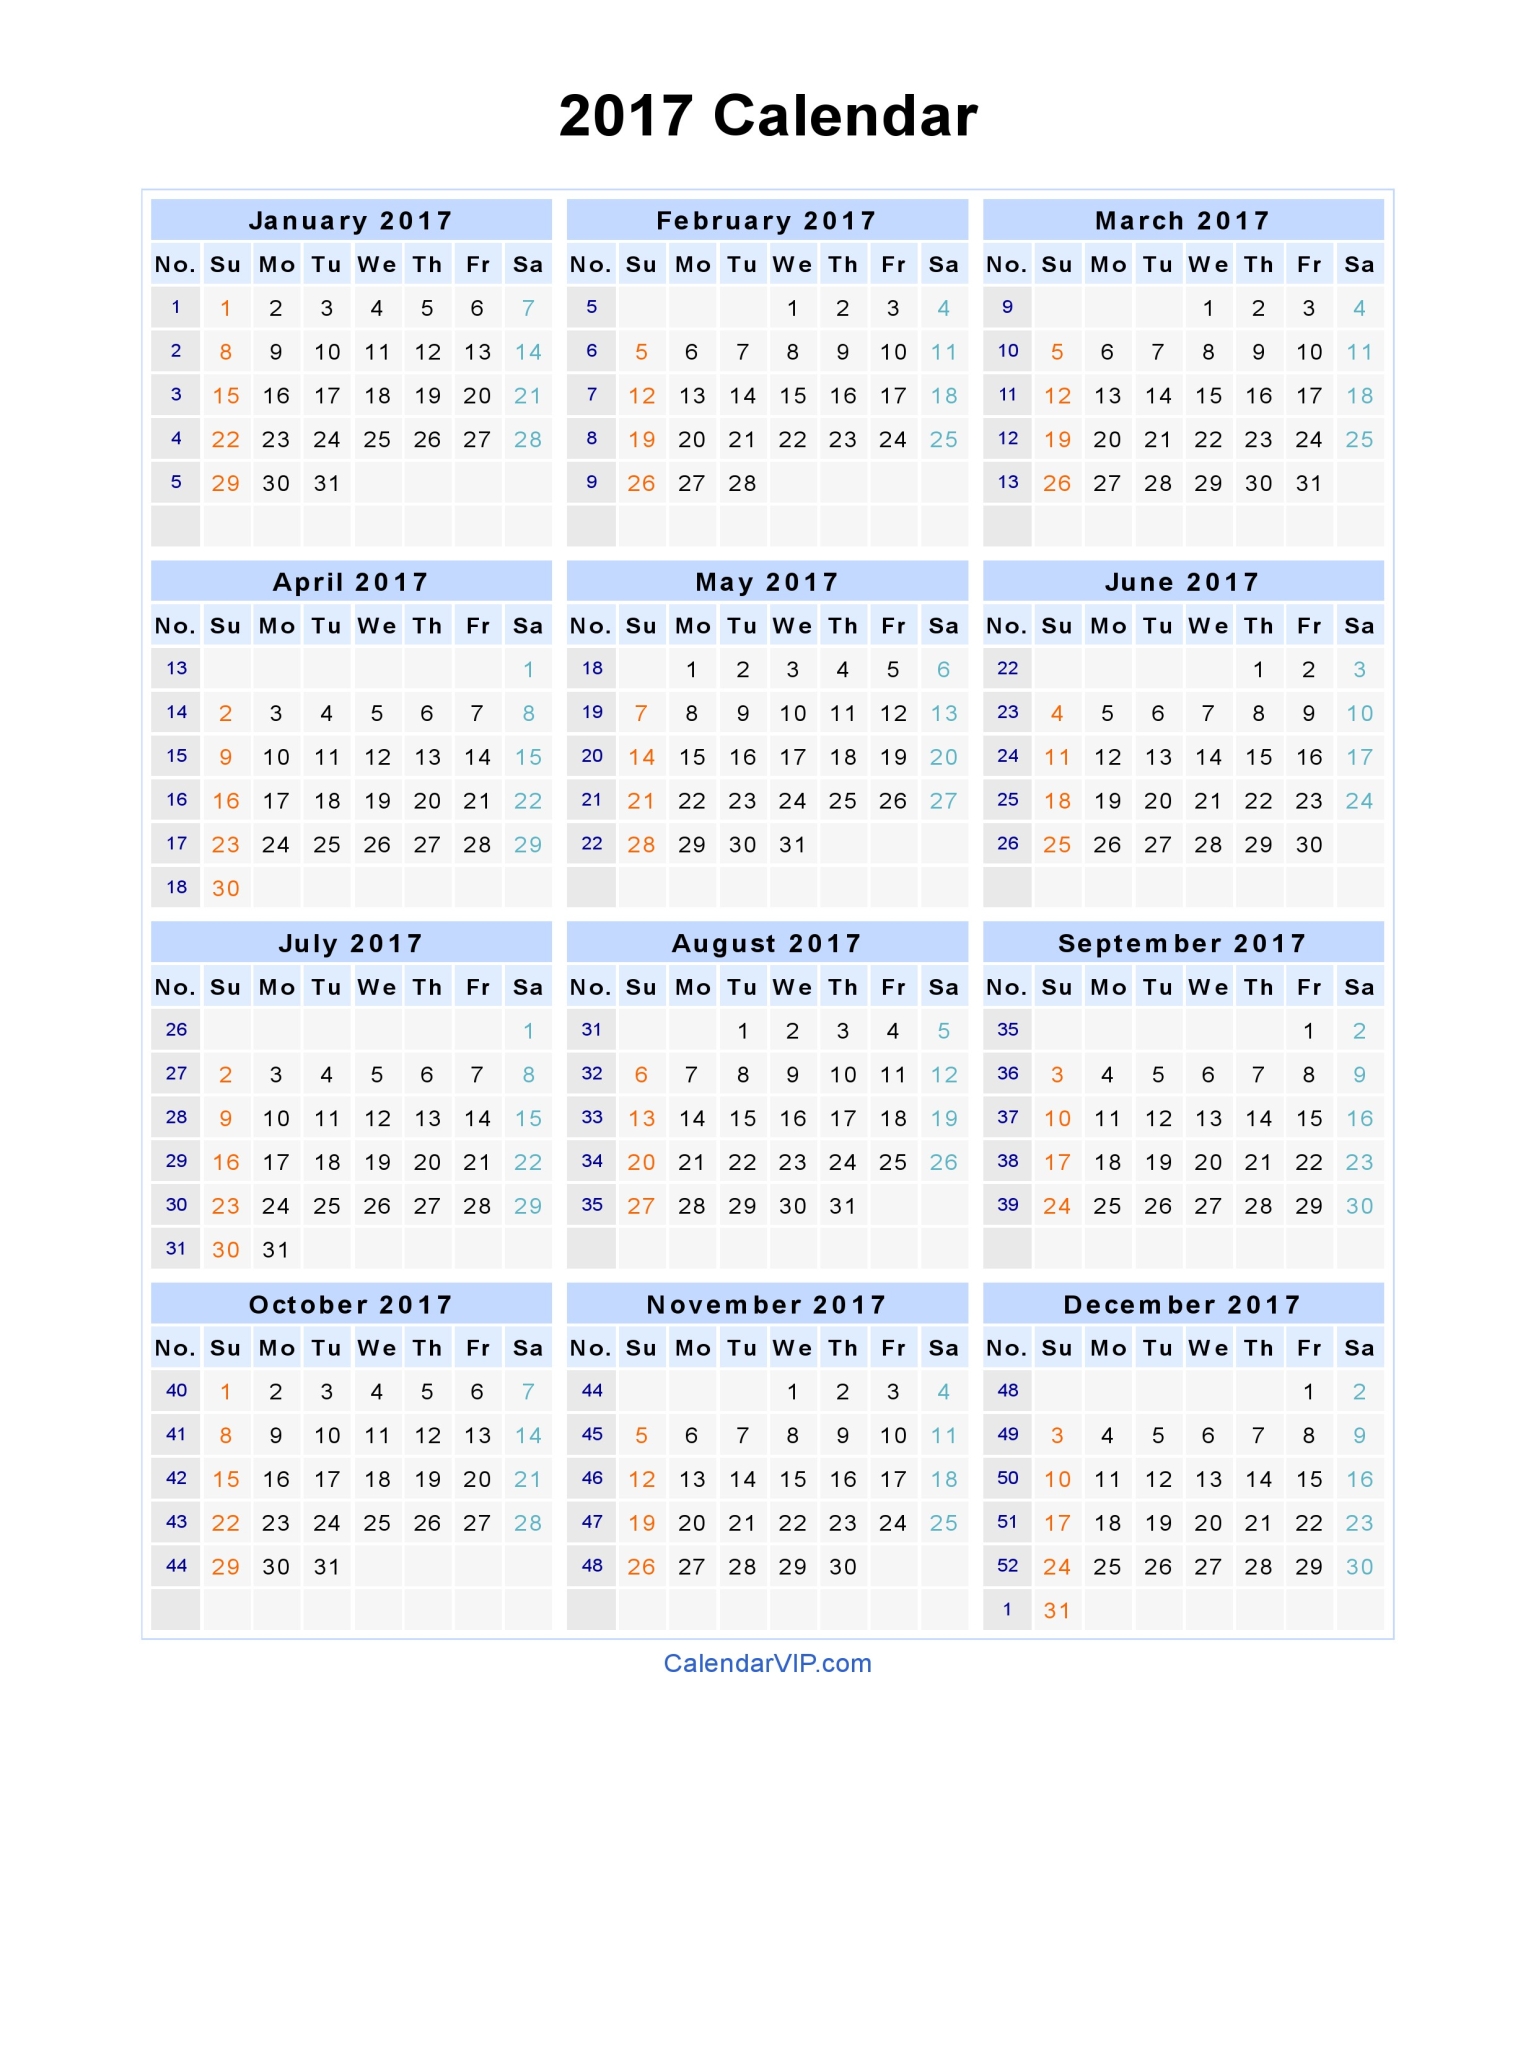 2017 Calendar - Blank Printable Calendar Template in PDF Word Excel